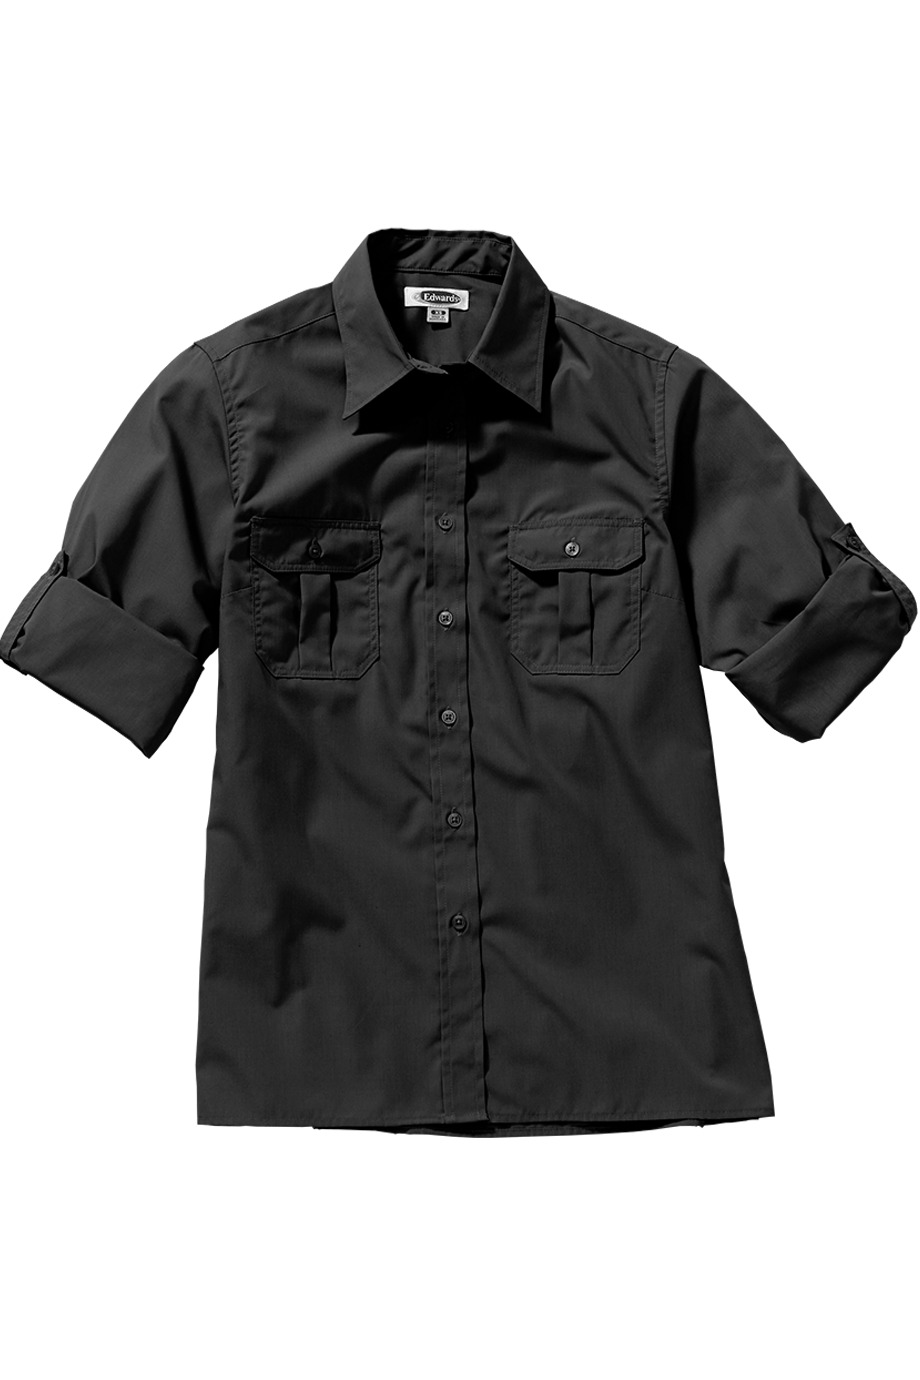 Edwards Garment 5288 - W Roll Sleeve Shirt